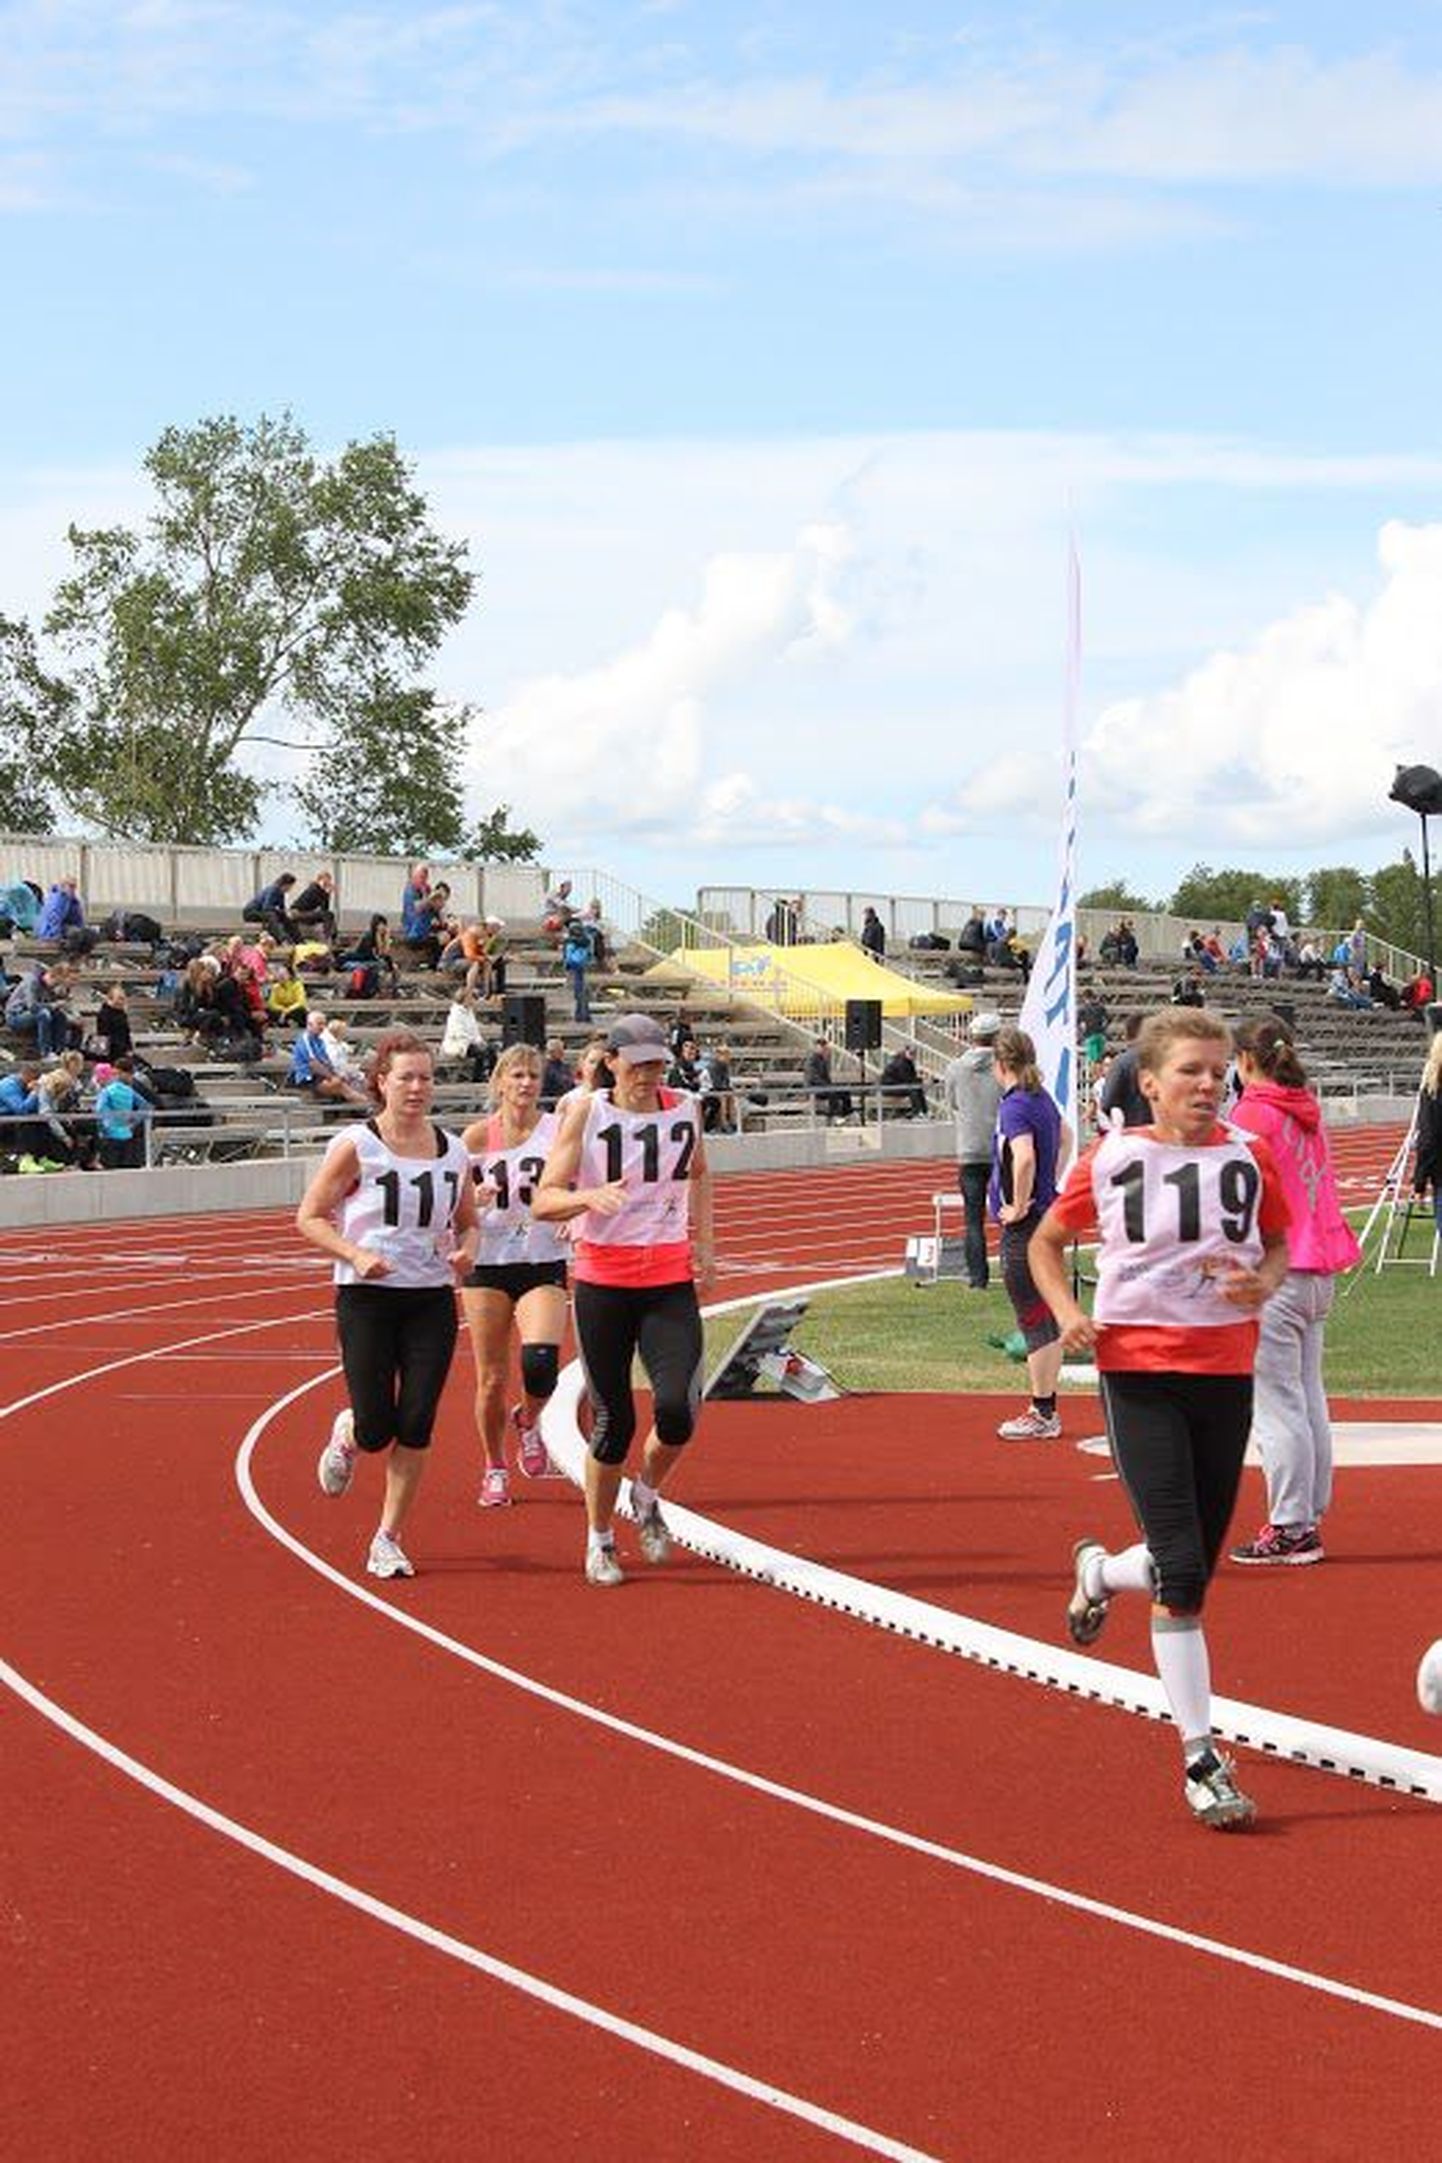 Suvemängudel 1500 meetri jooksu võitmas Merle Vantsi (119)